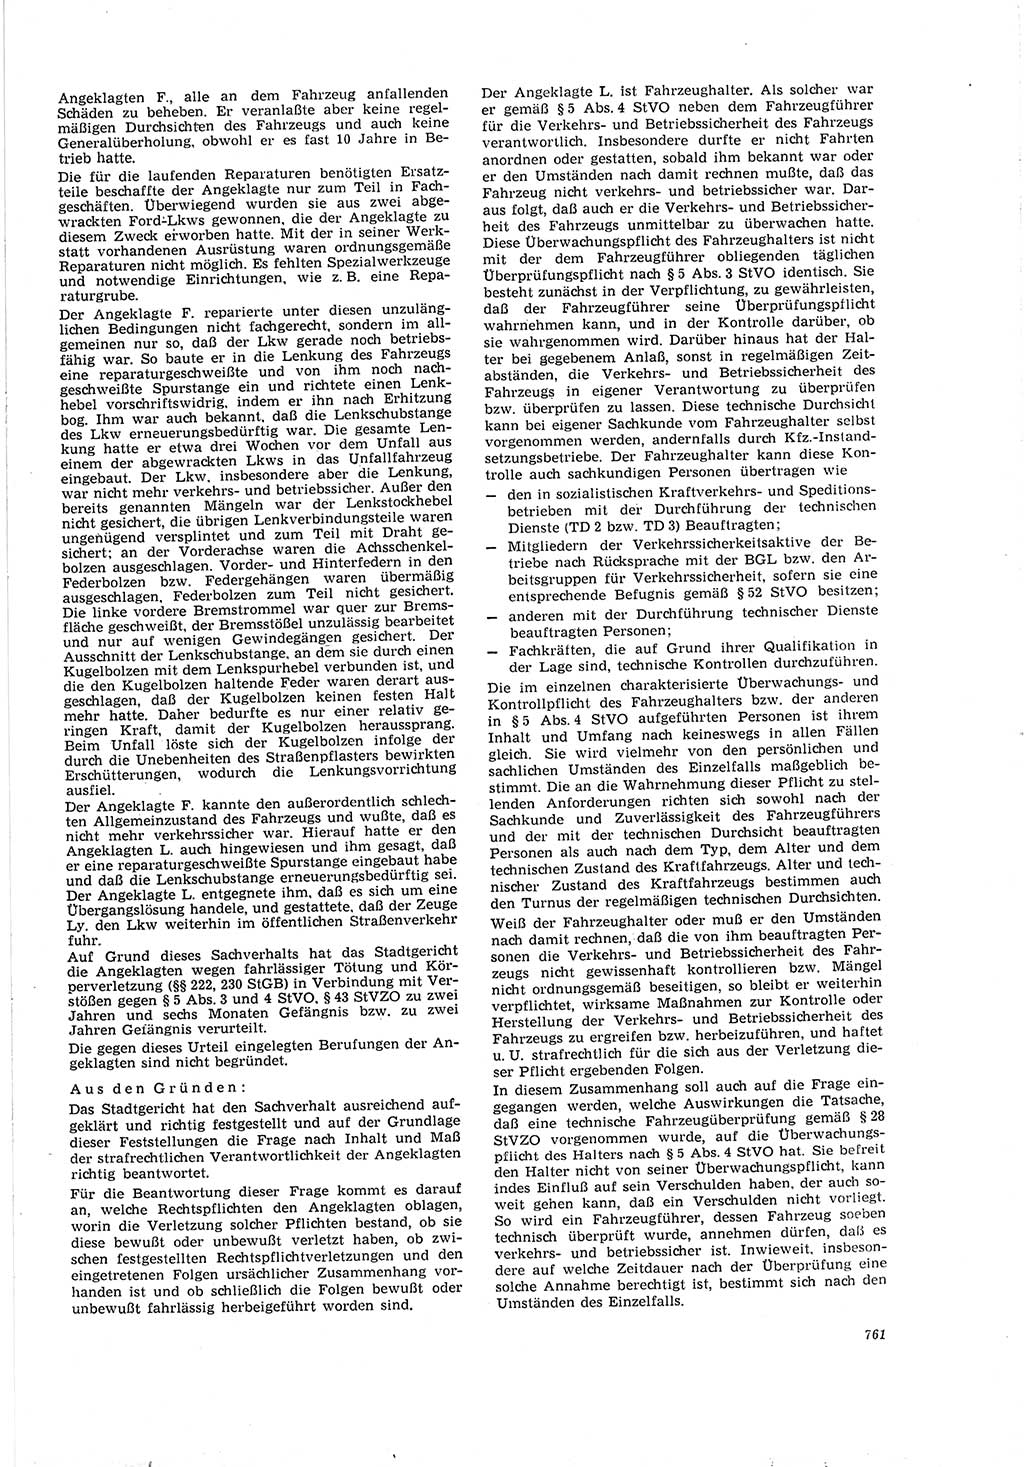 Neue Justiz (NJ), Zeitschrift für Recht und Rechtswissenschaft [Deutsche Demokratische Republik (DDR)], 20. Jahrgang 1966, Seite 761 (NJ DDR 1966, S. 761)